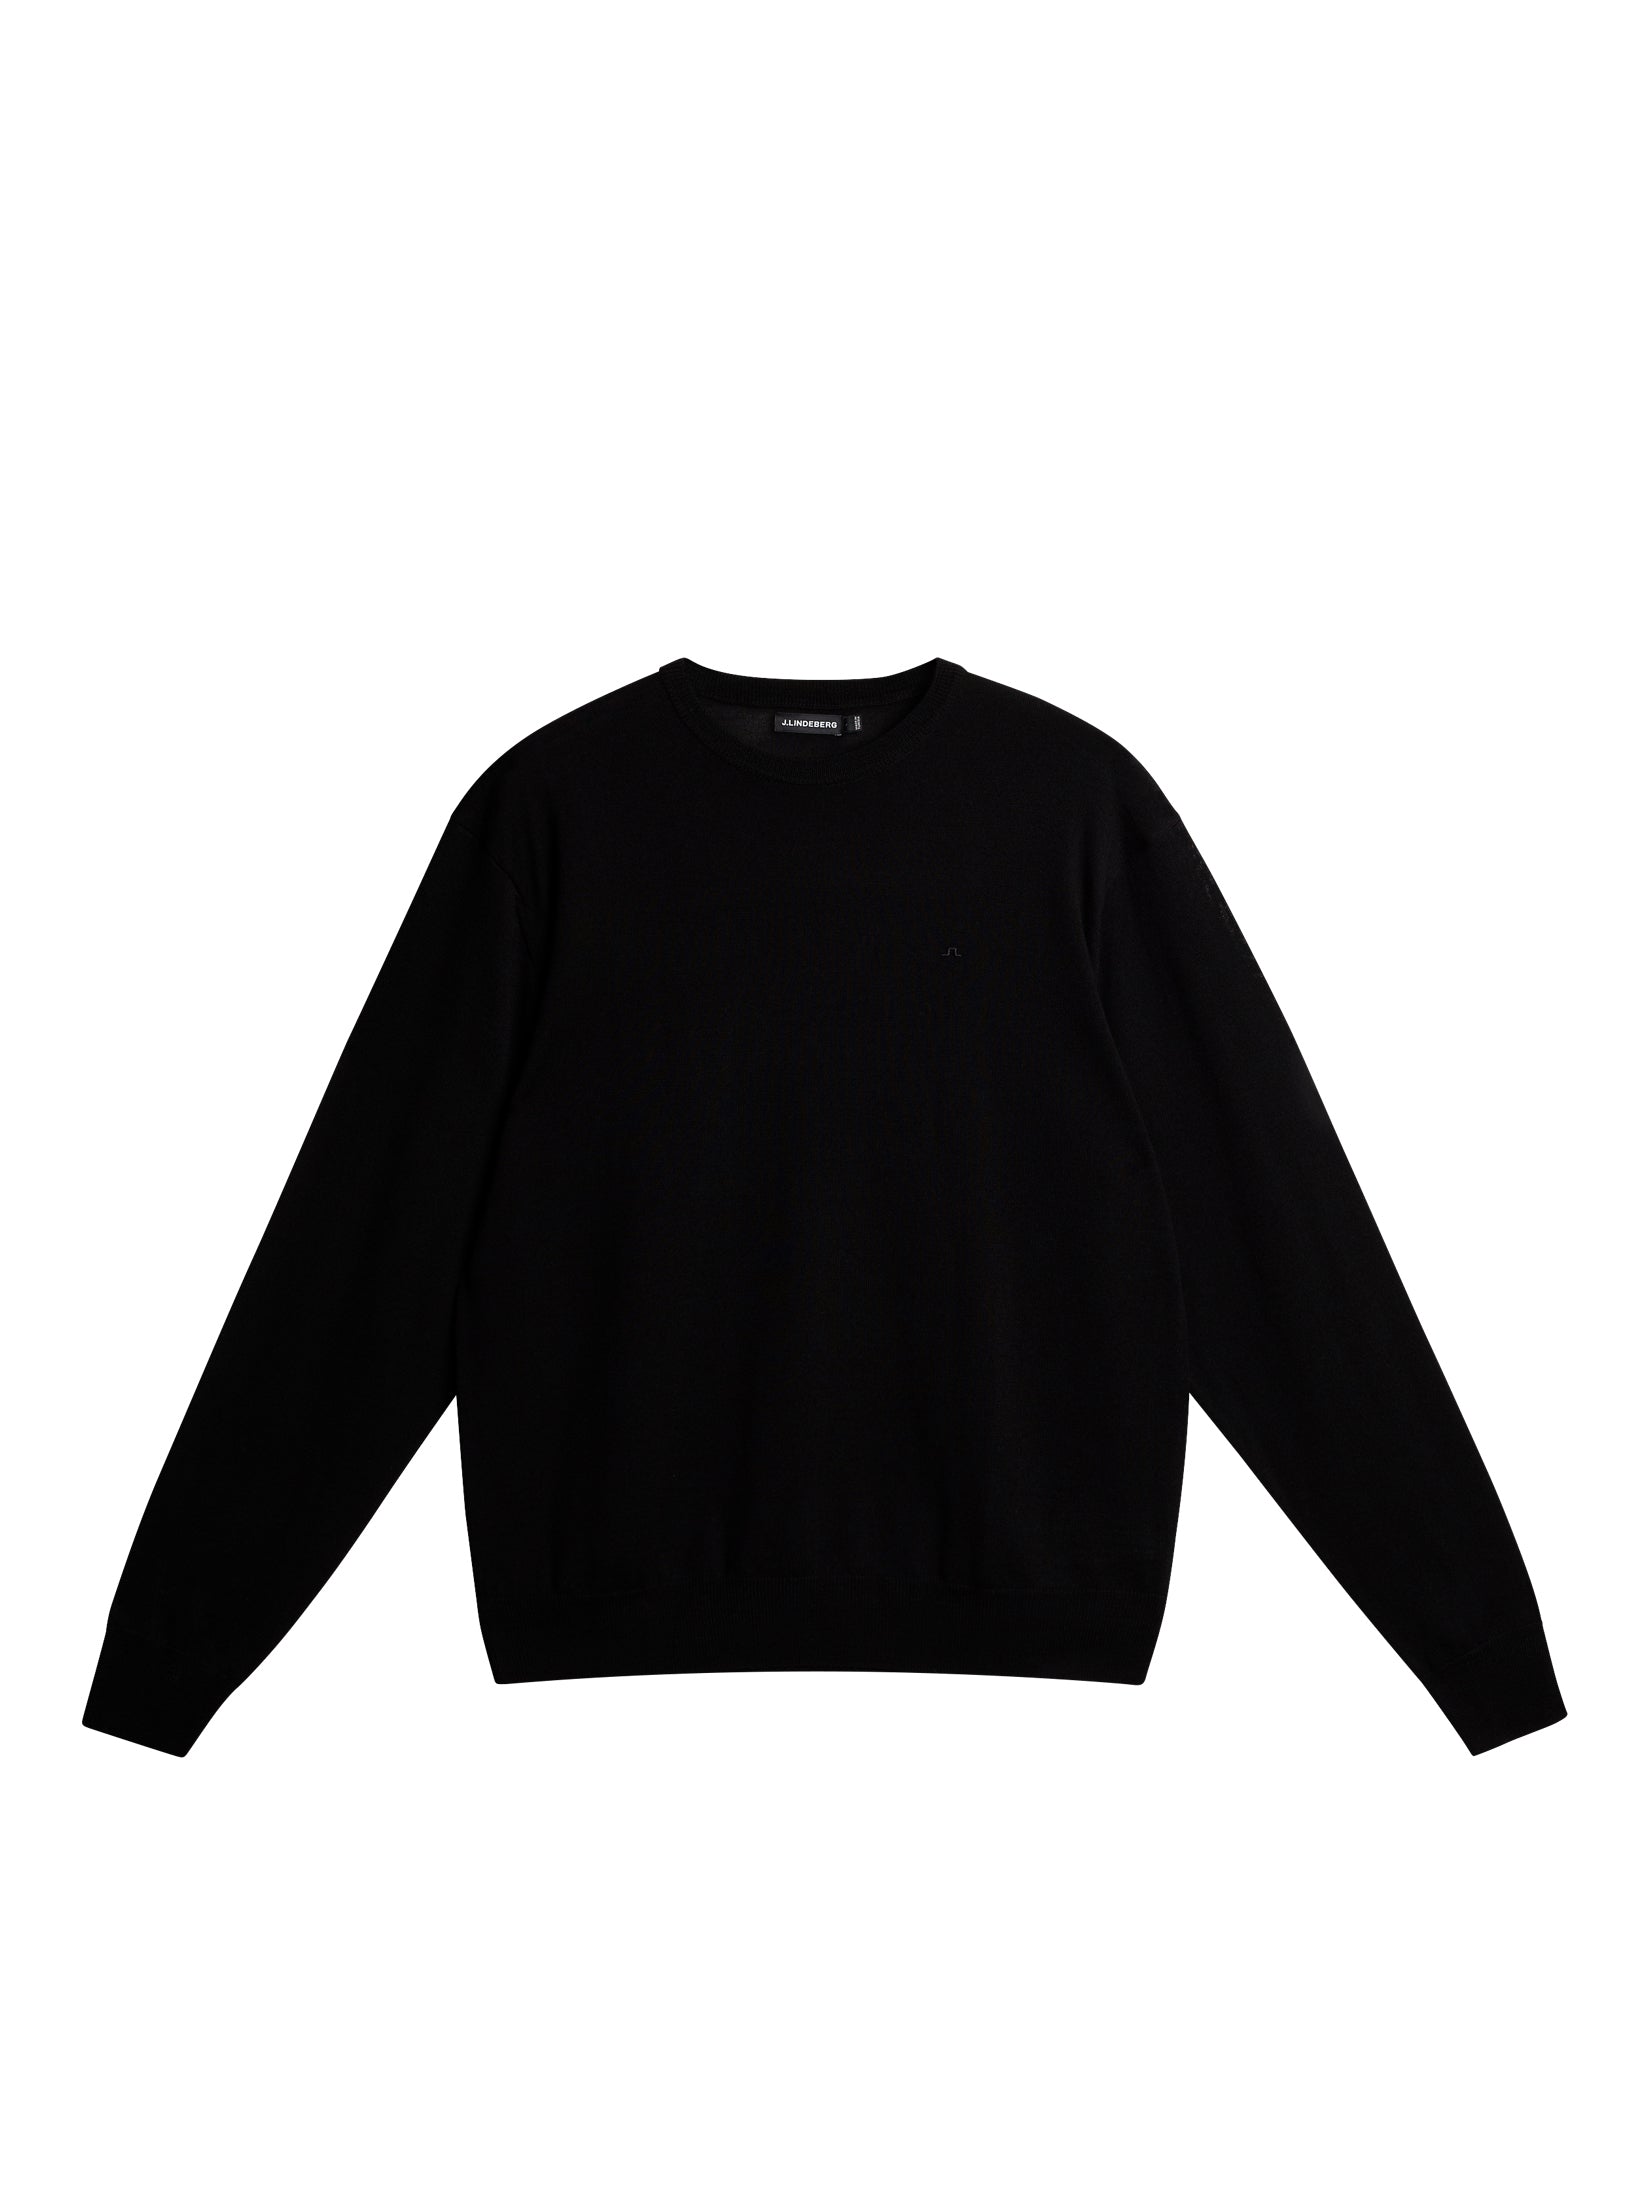 Mino Light Merino Sweater